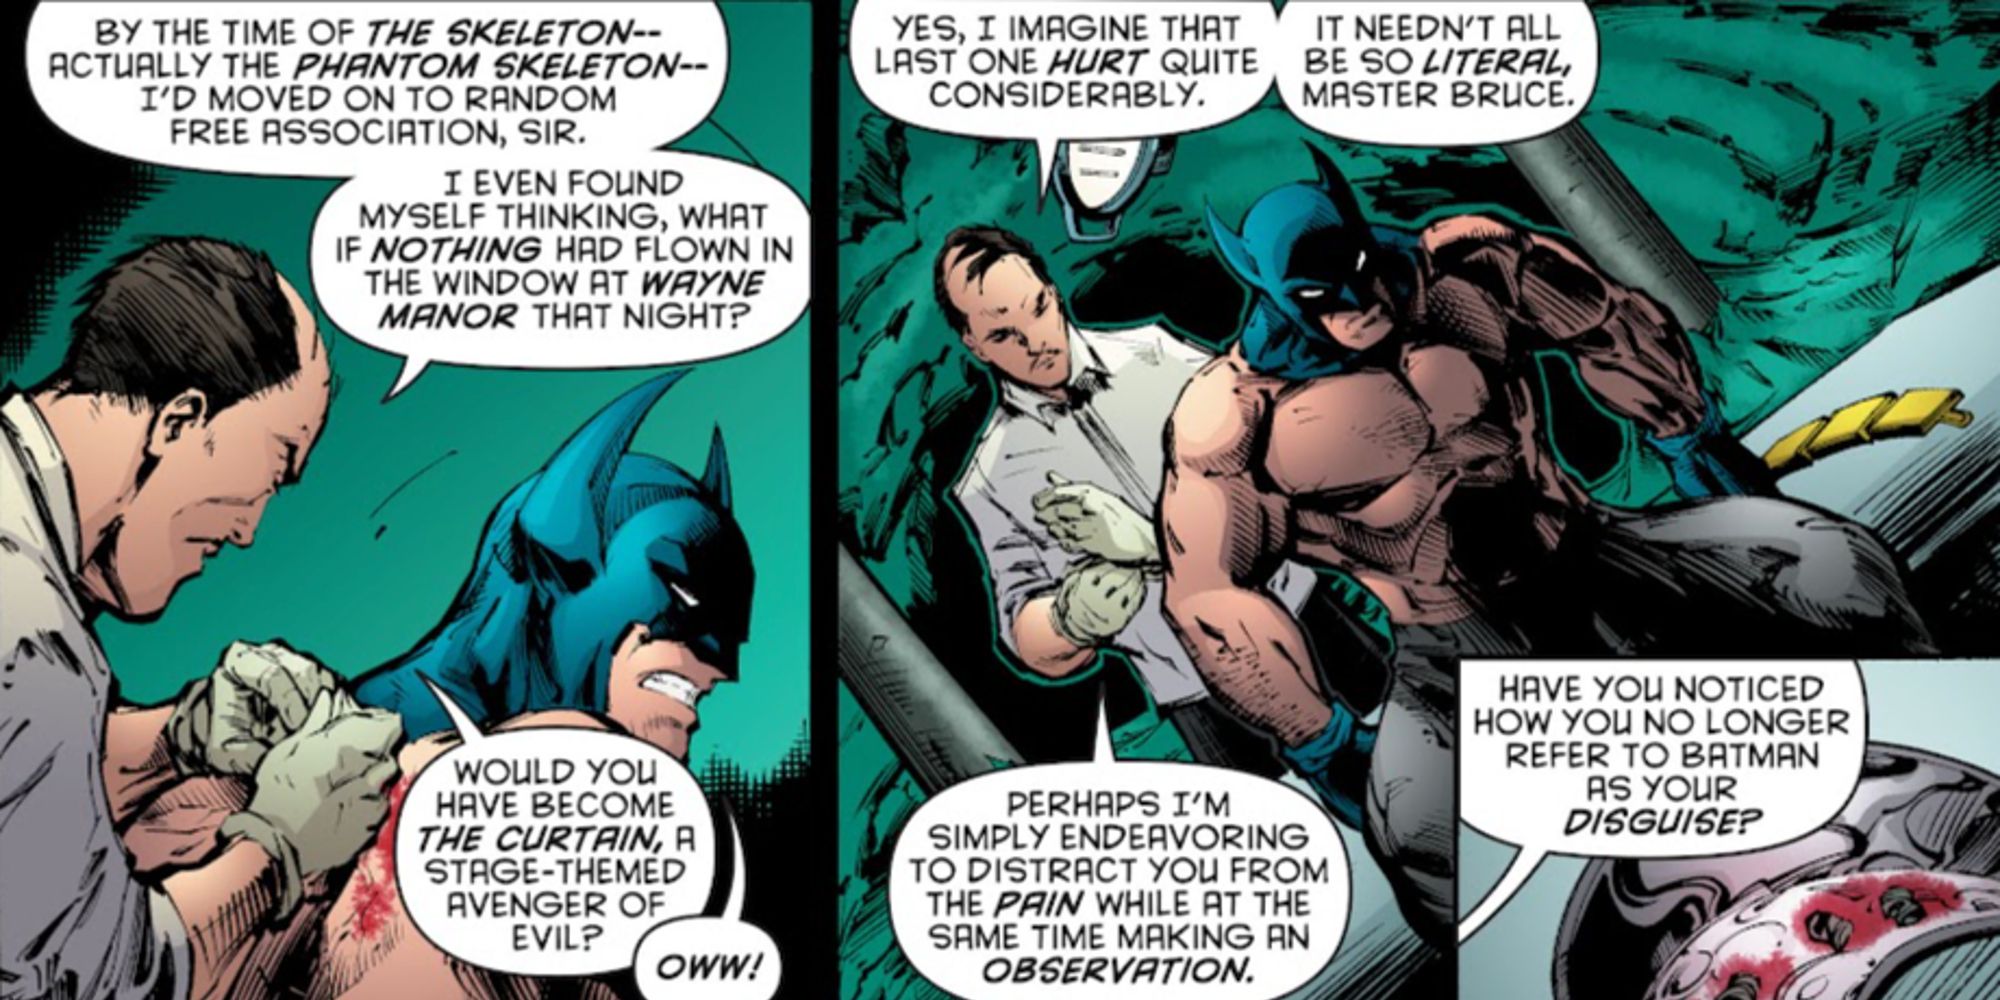 Alfred tratando as feridas de Batman em Batman #682